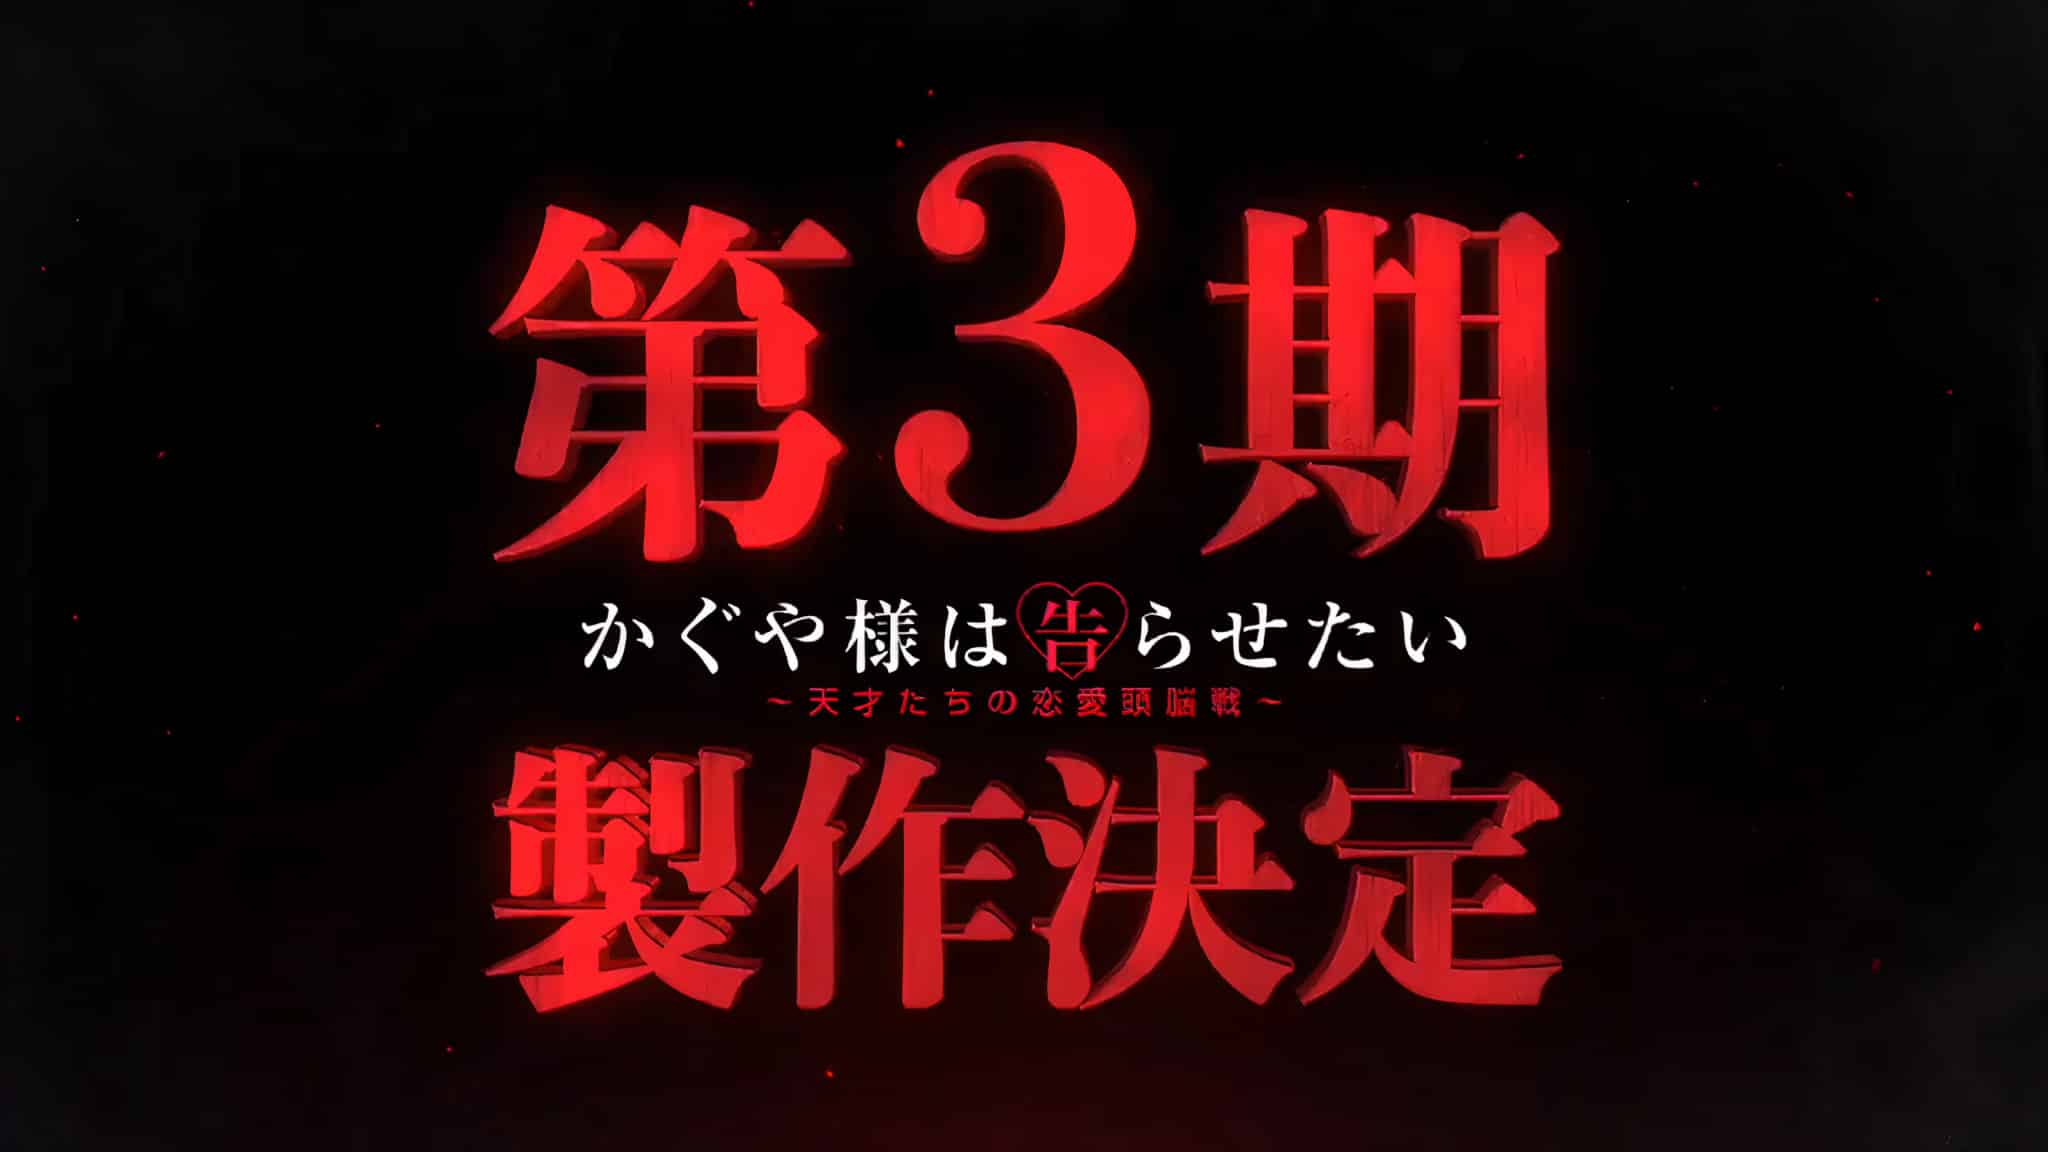 Annonce de anime Kaguya-sama Love is War Saison 3